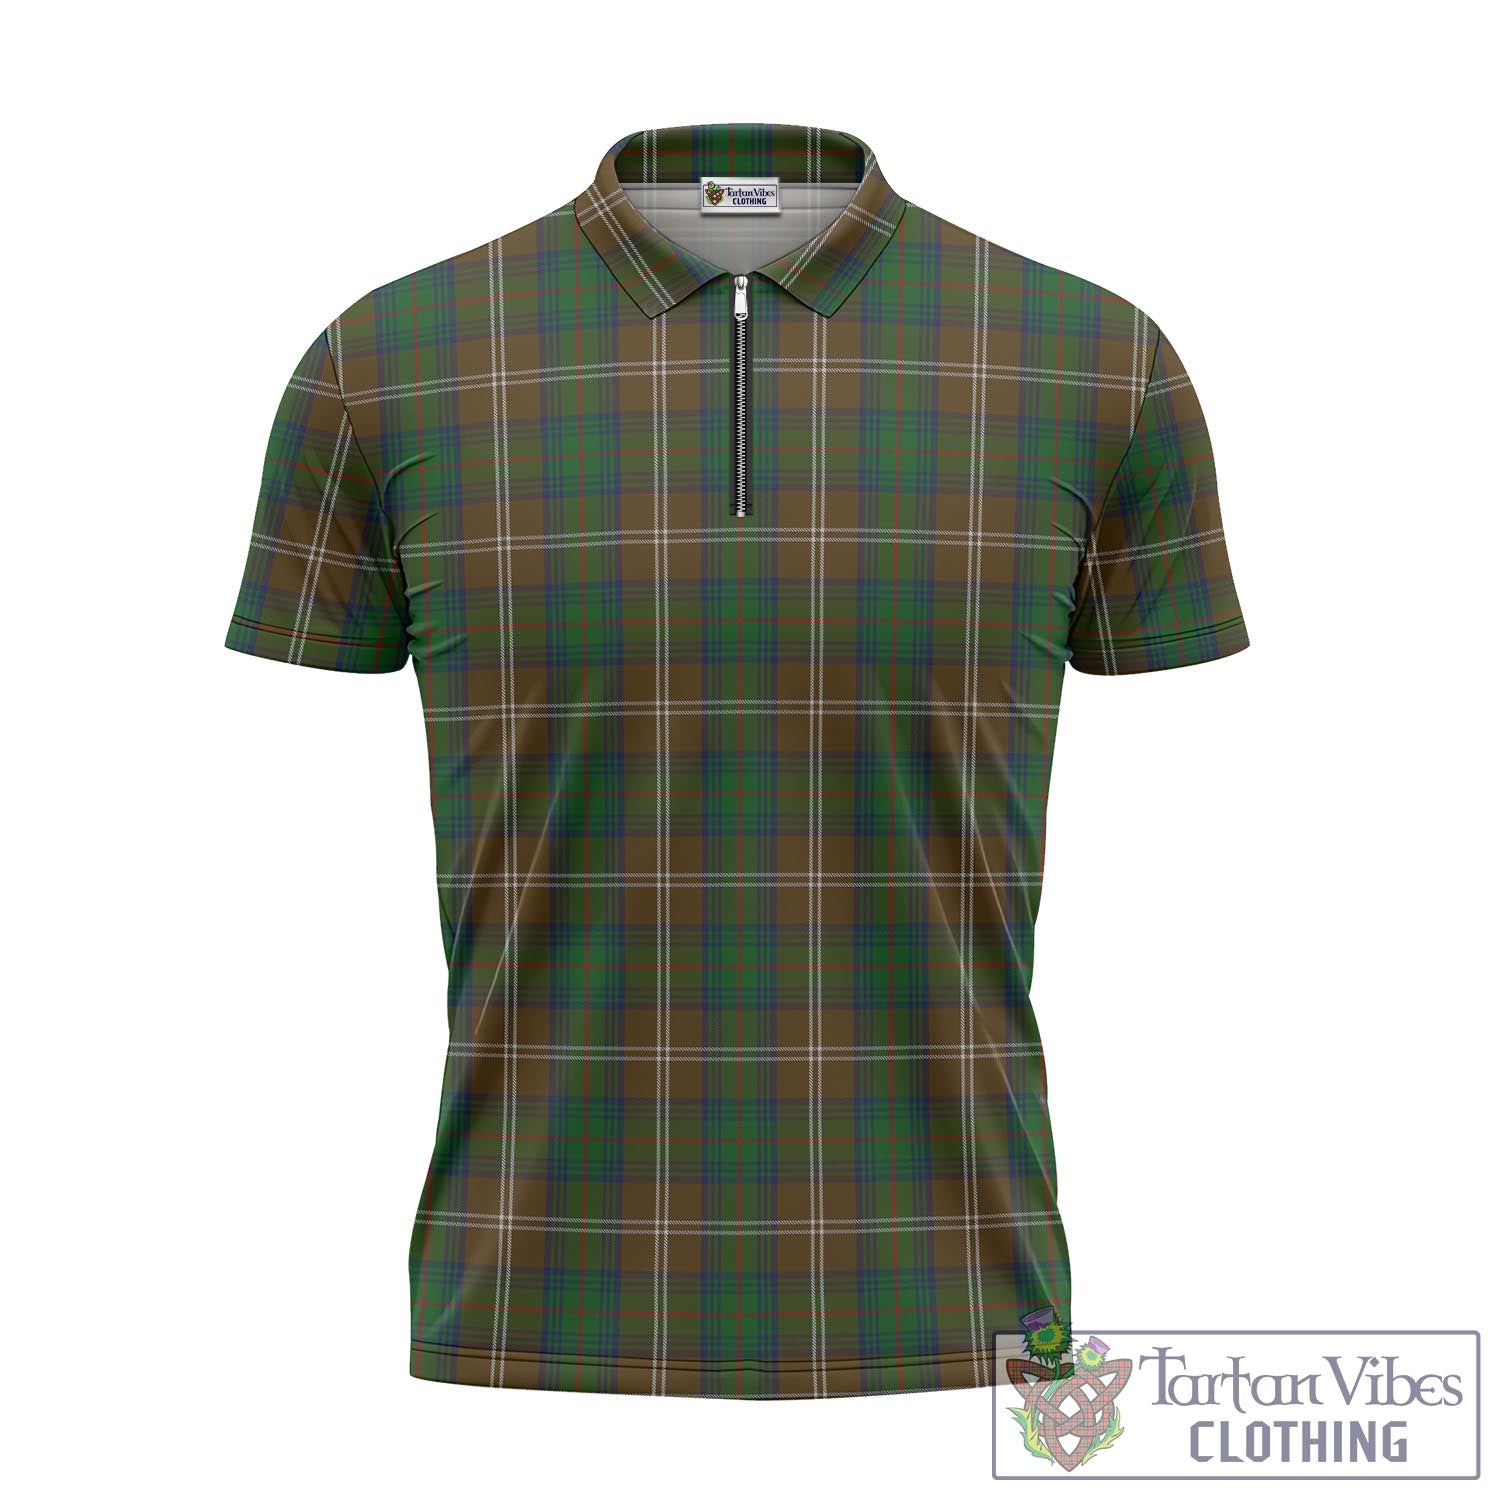 Tartan Vibes Clothing Chisholm Hunting Tartan Zipper Polo Shirt